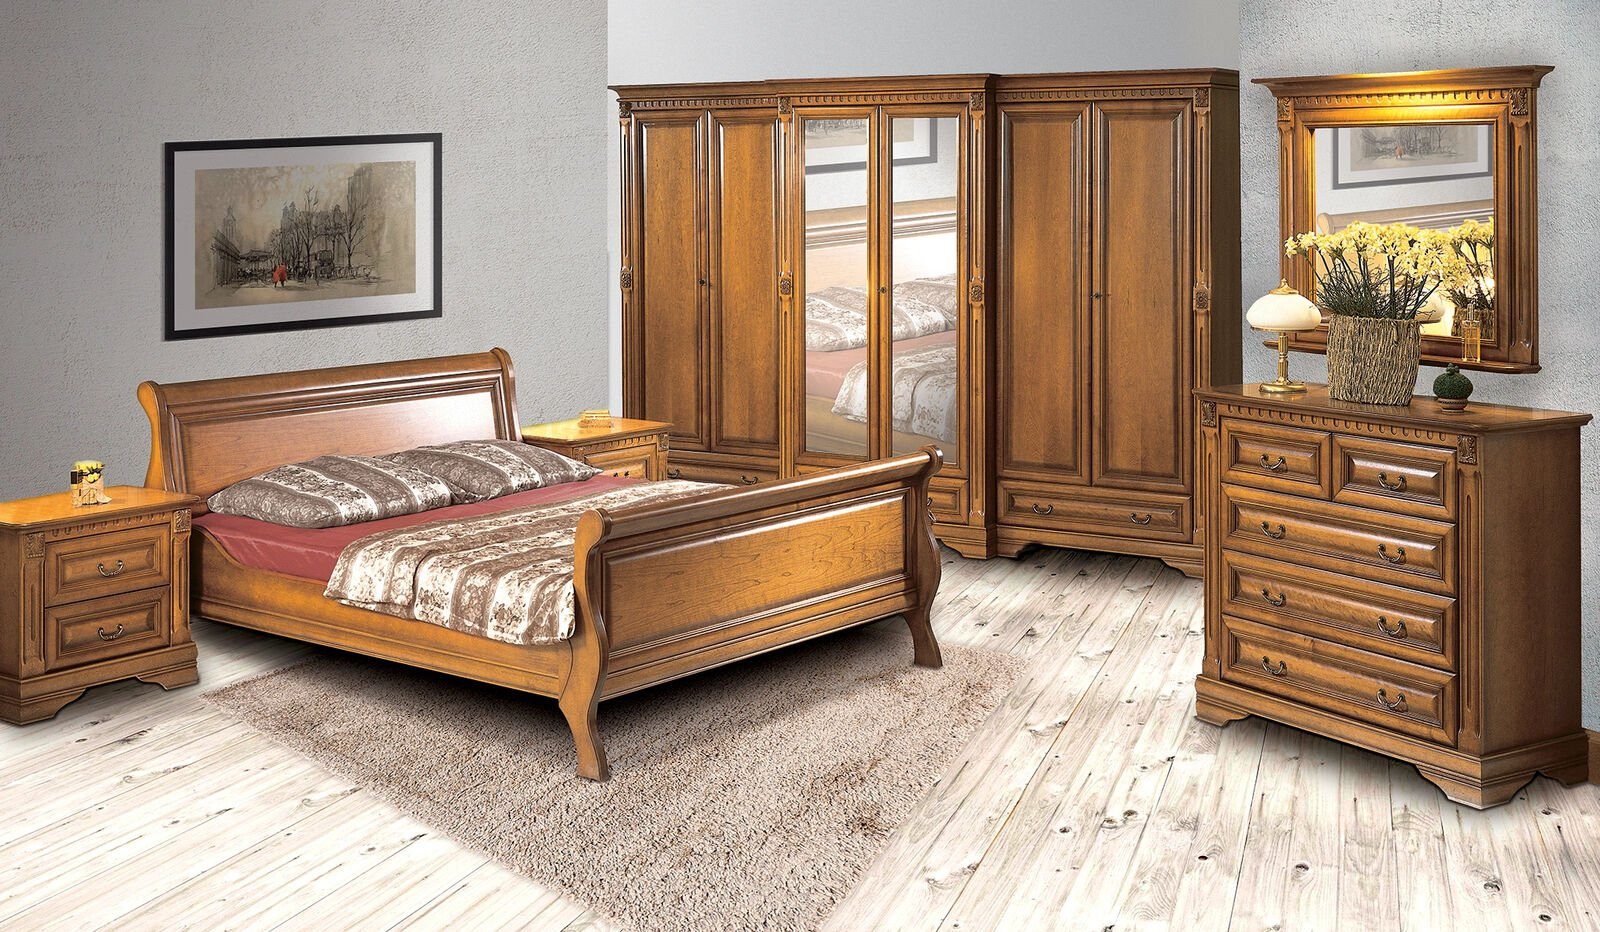 3tlg. Holz JVmoebel Schlafzimmer-Set Nachttischen 2 Betten Möbel mit Bett Set